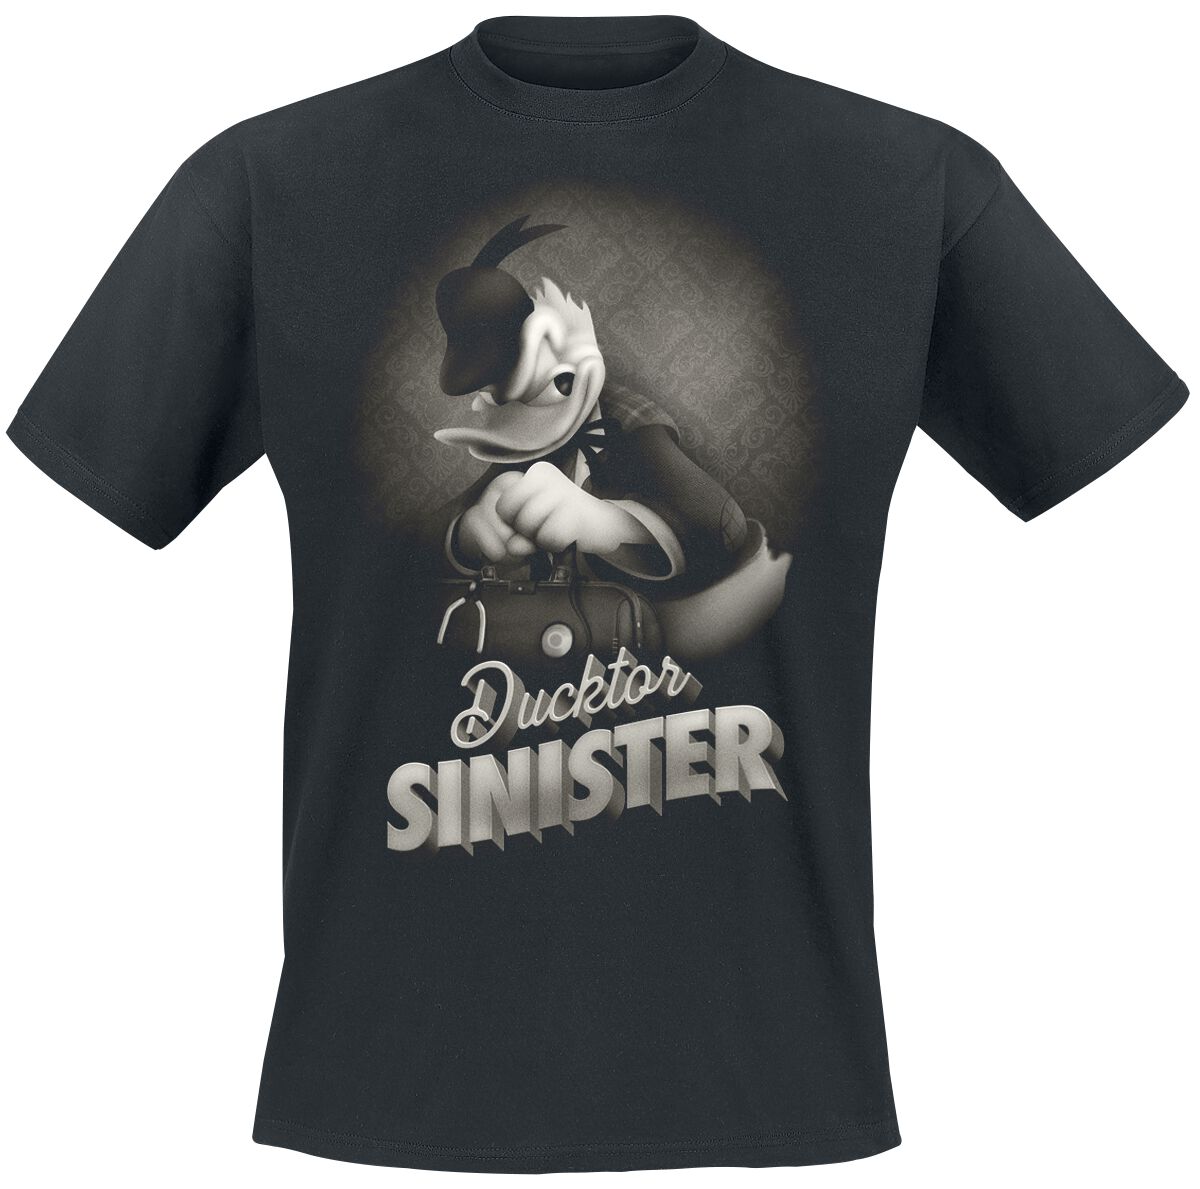 Mickey Mouse - Disney T-Shirt - Donald - Ducktor Sinister - S bis XXL - für Männer - Größe S - schwarz  - EMP exklusives Merchandise!